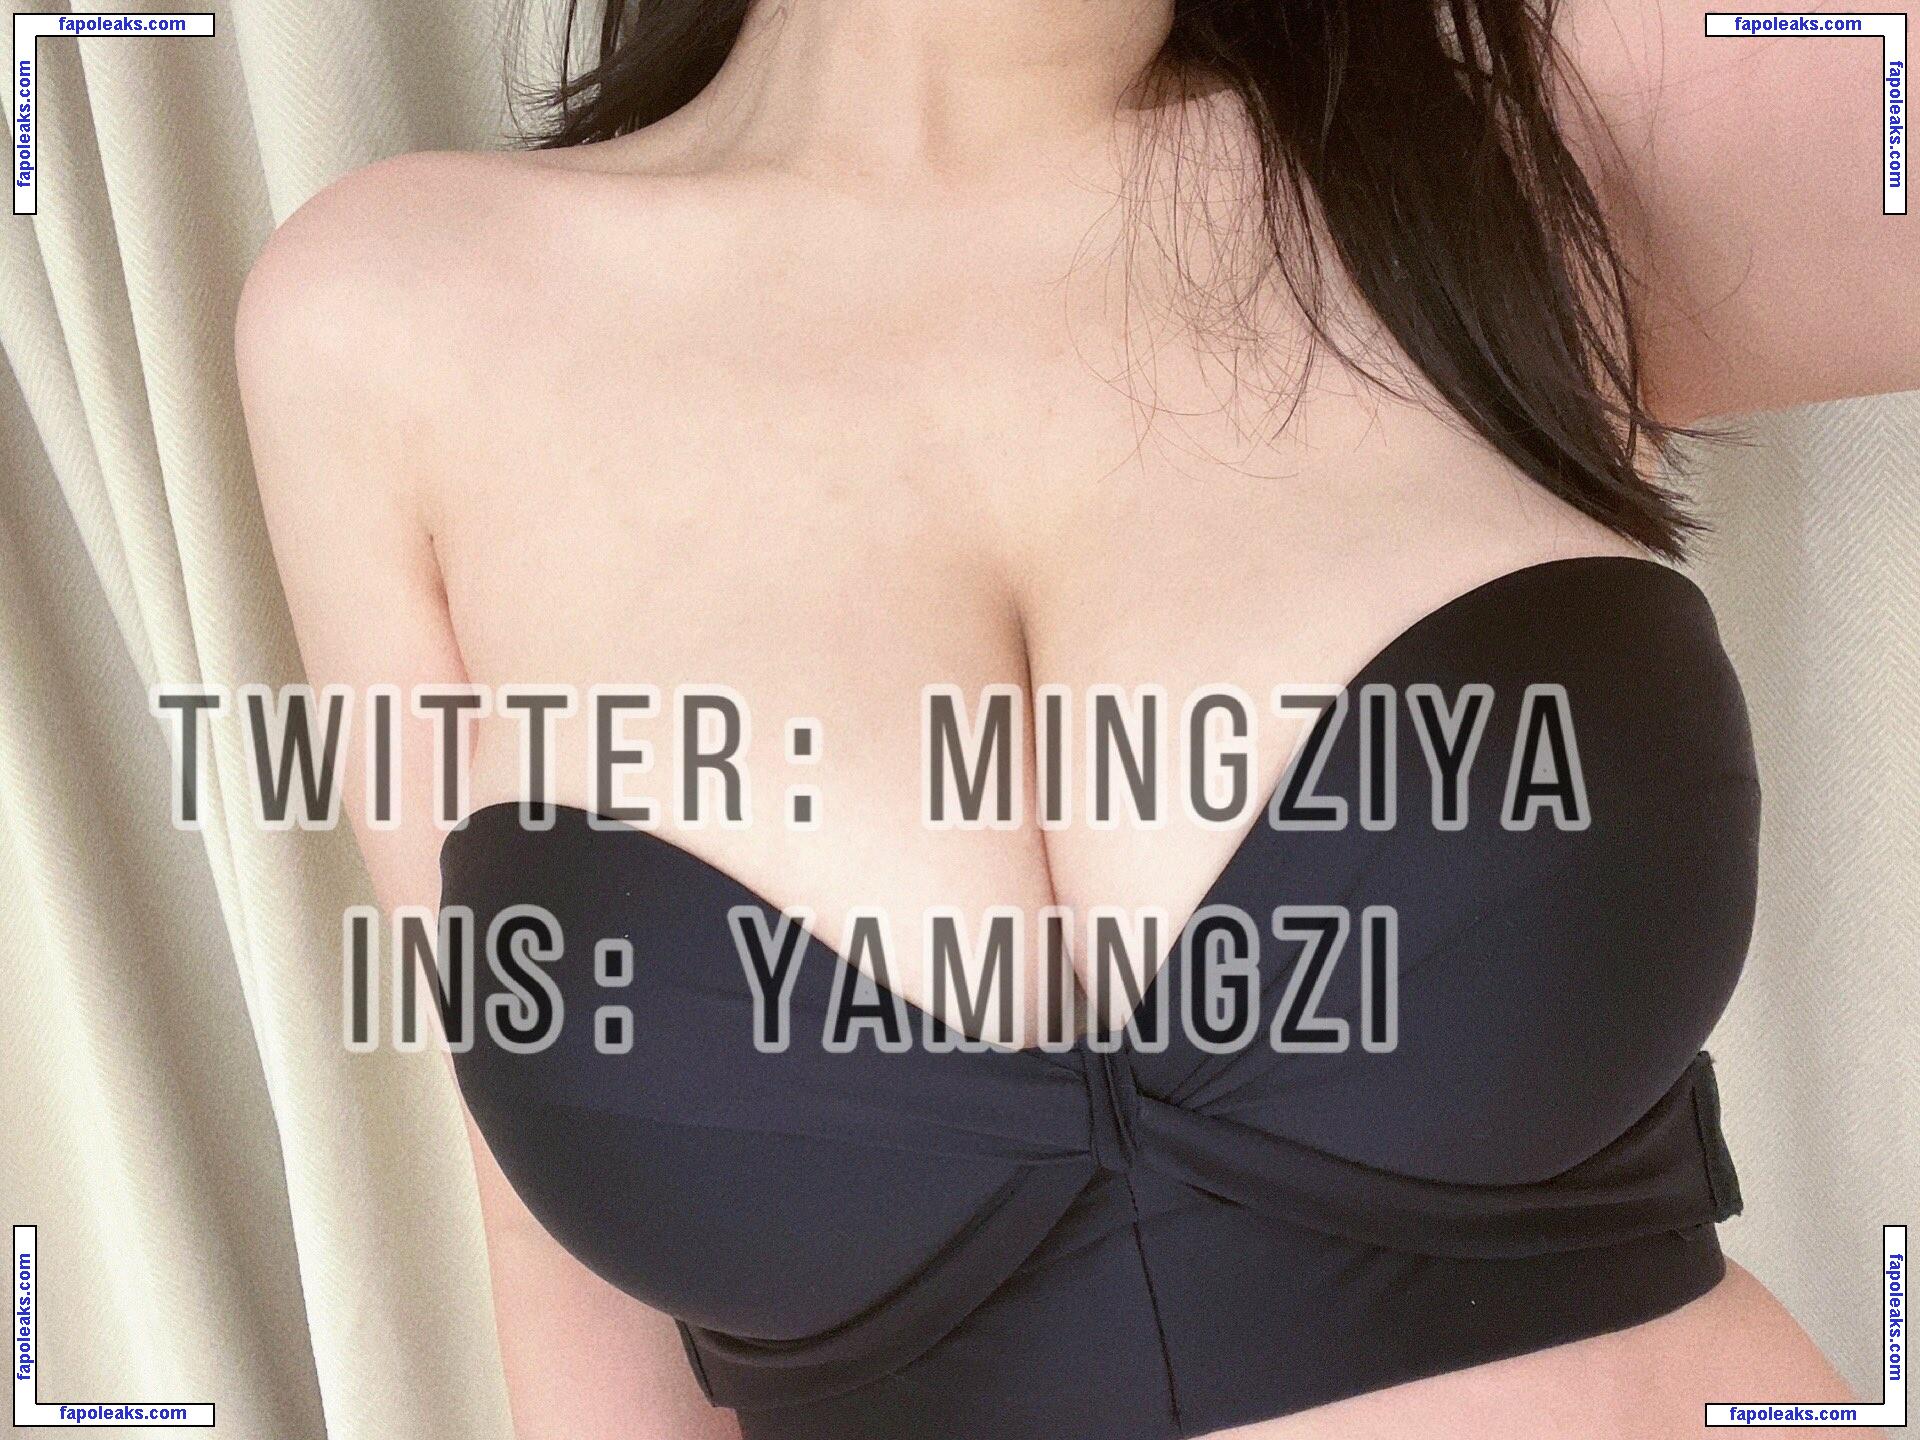 Mingziyaya / MingZiya / yamingzi / 明子呀 nude photo #0011 from OnlyFans